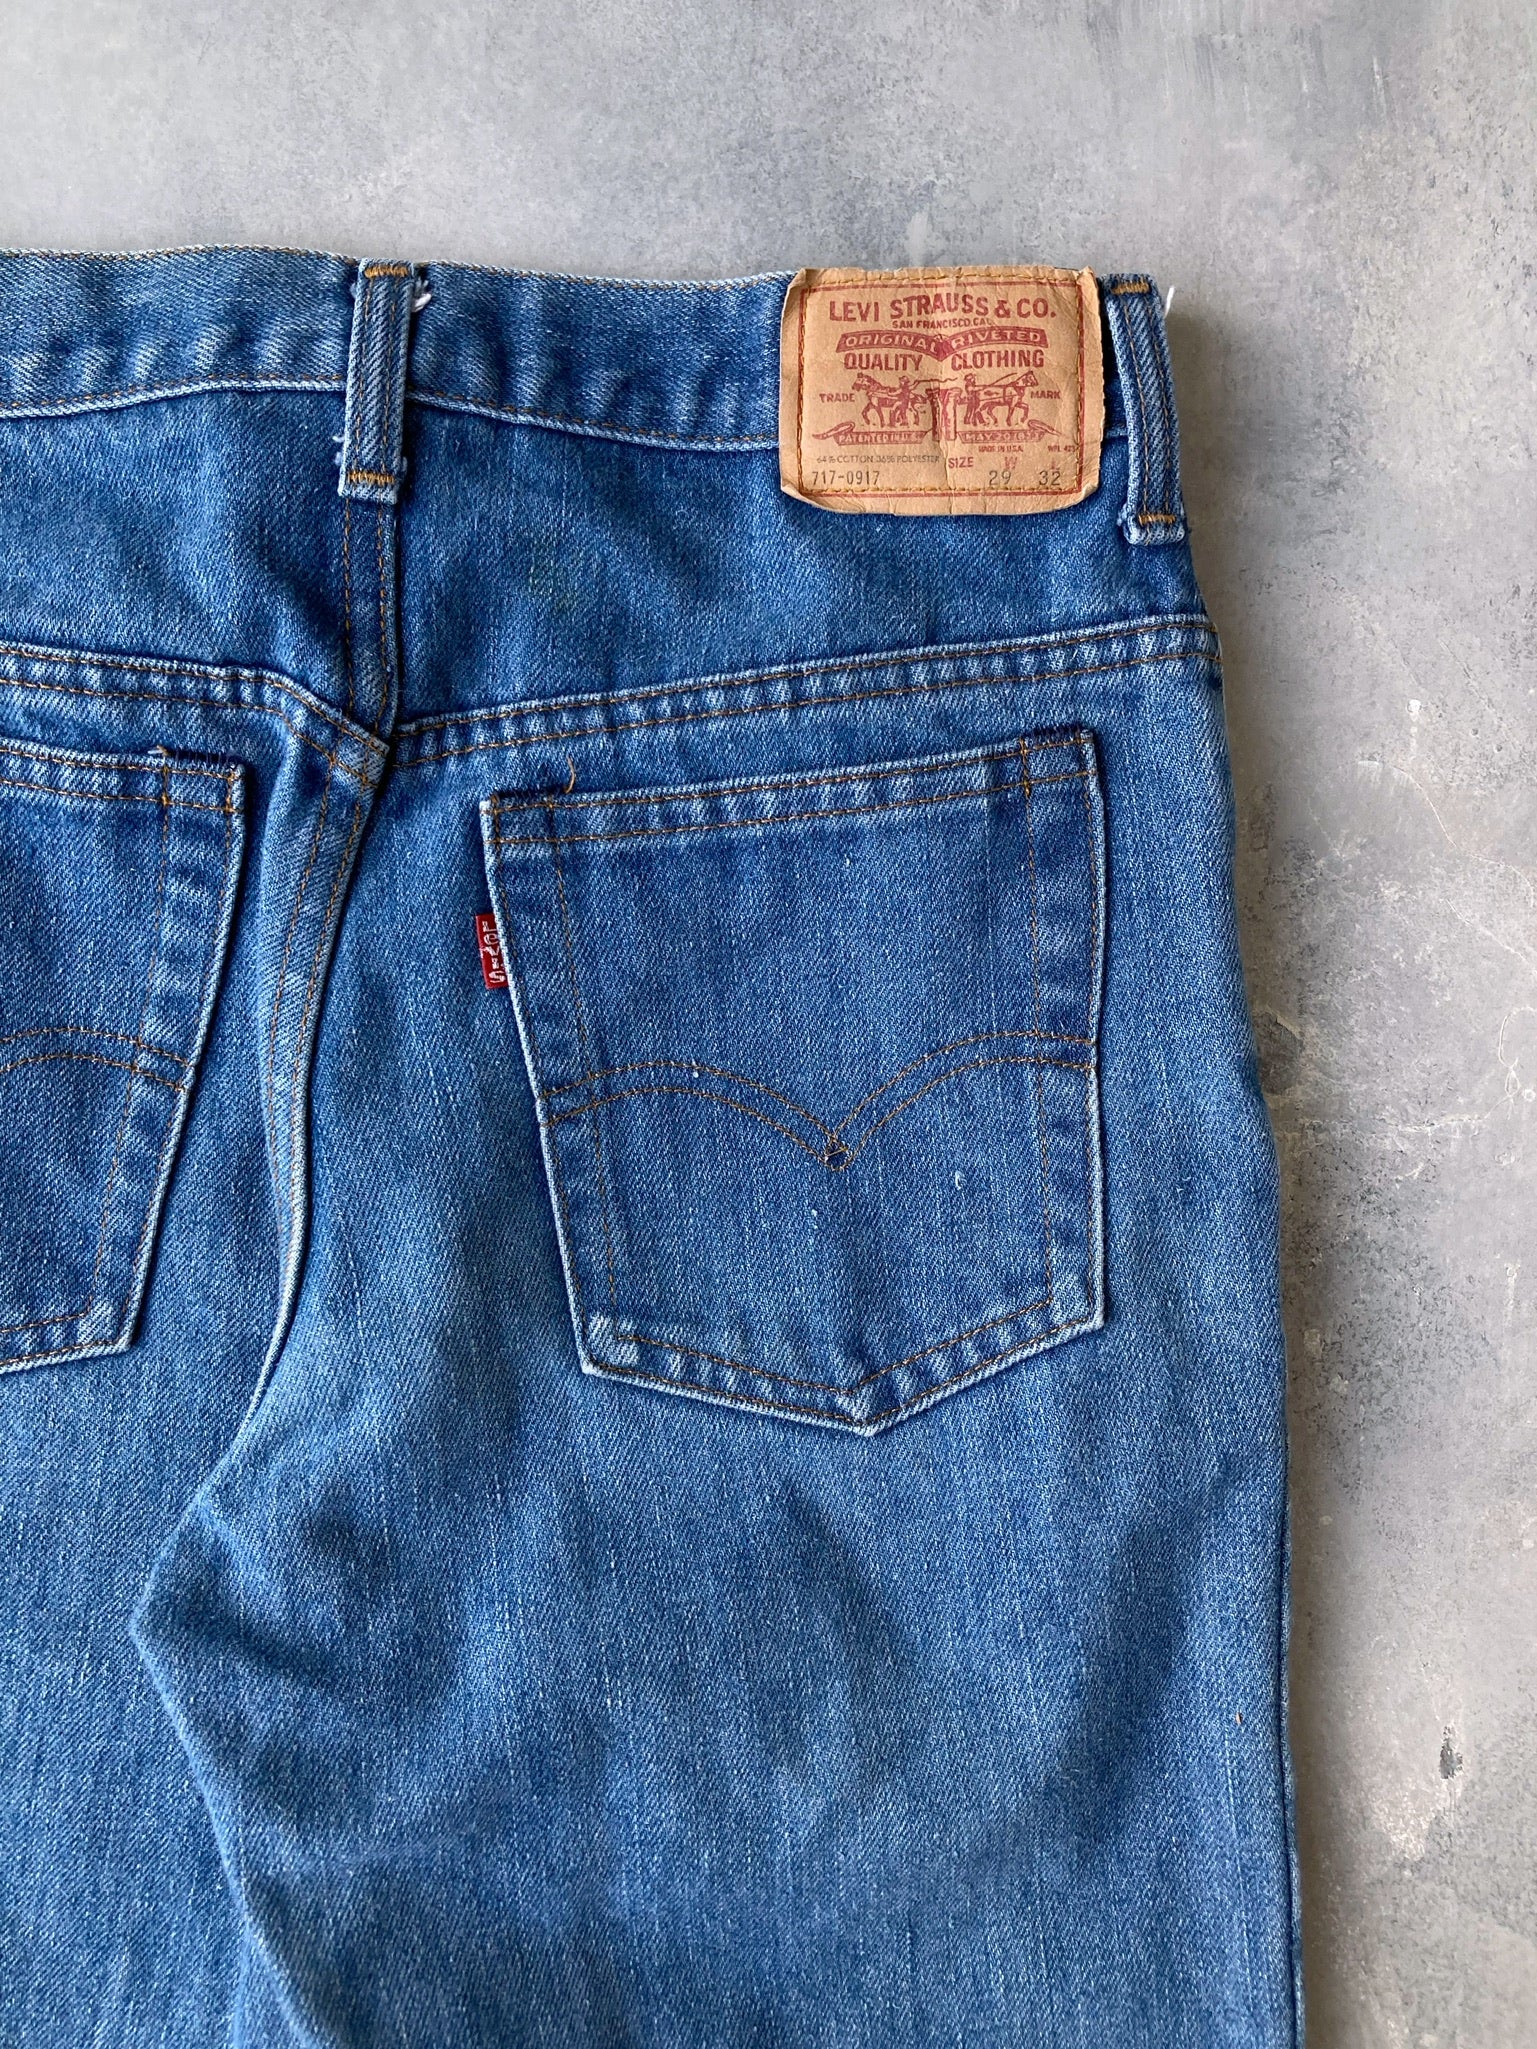 Levi's Jeans 90s - 28x31 – Lot 1 Vintage